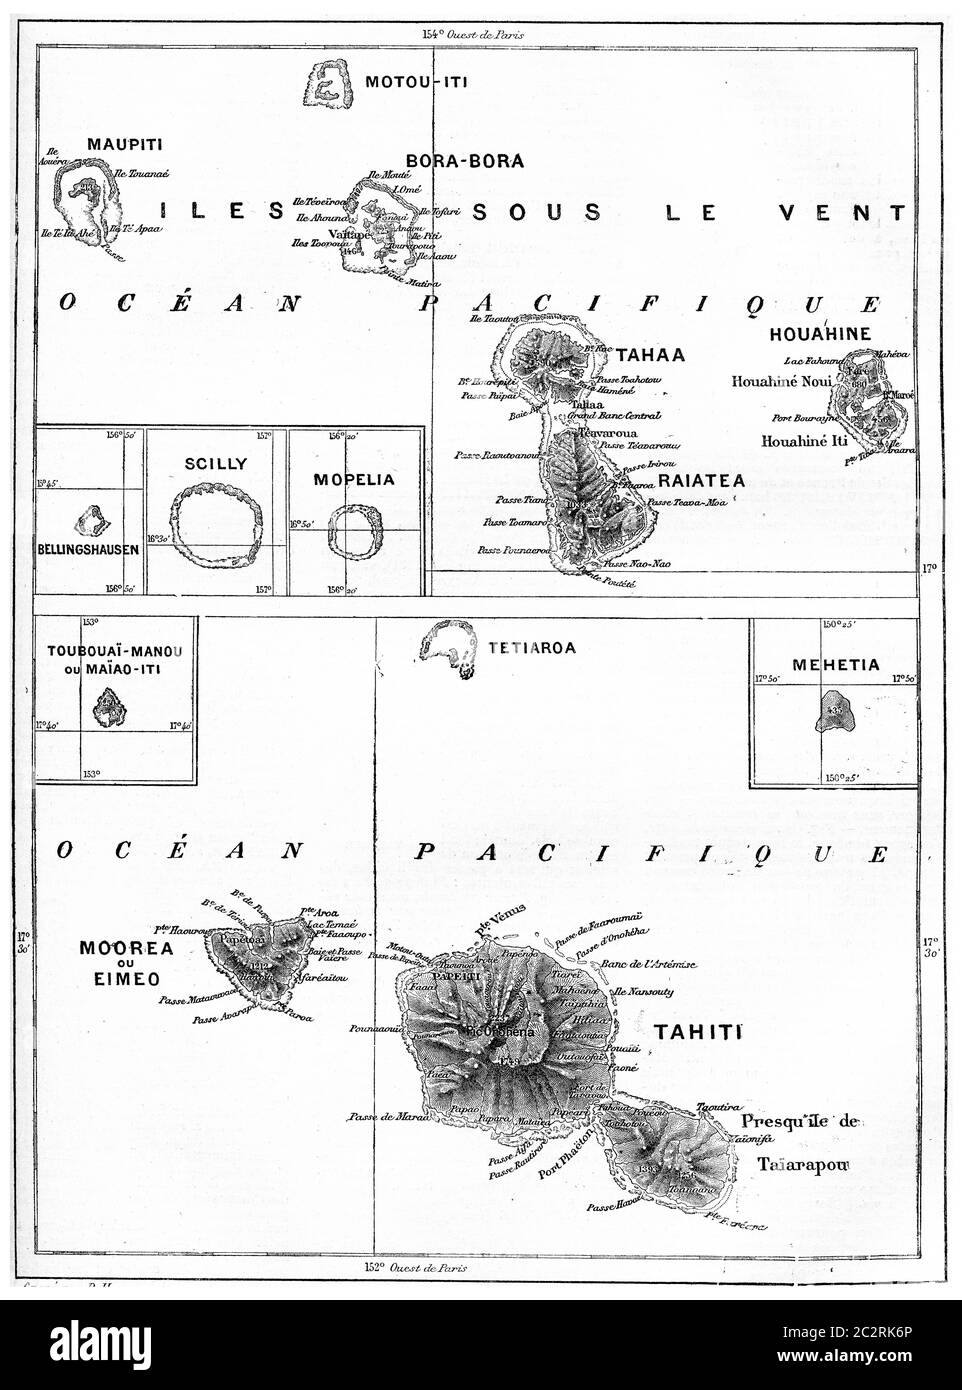 Alte eingravierte Abbildung der Karte von Tahiti Insel auf Archipel, mit Namen seiner verschiedenen Orte und dort Orte. Wörterbuch der Worte und dünn Stockfoto